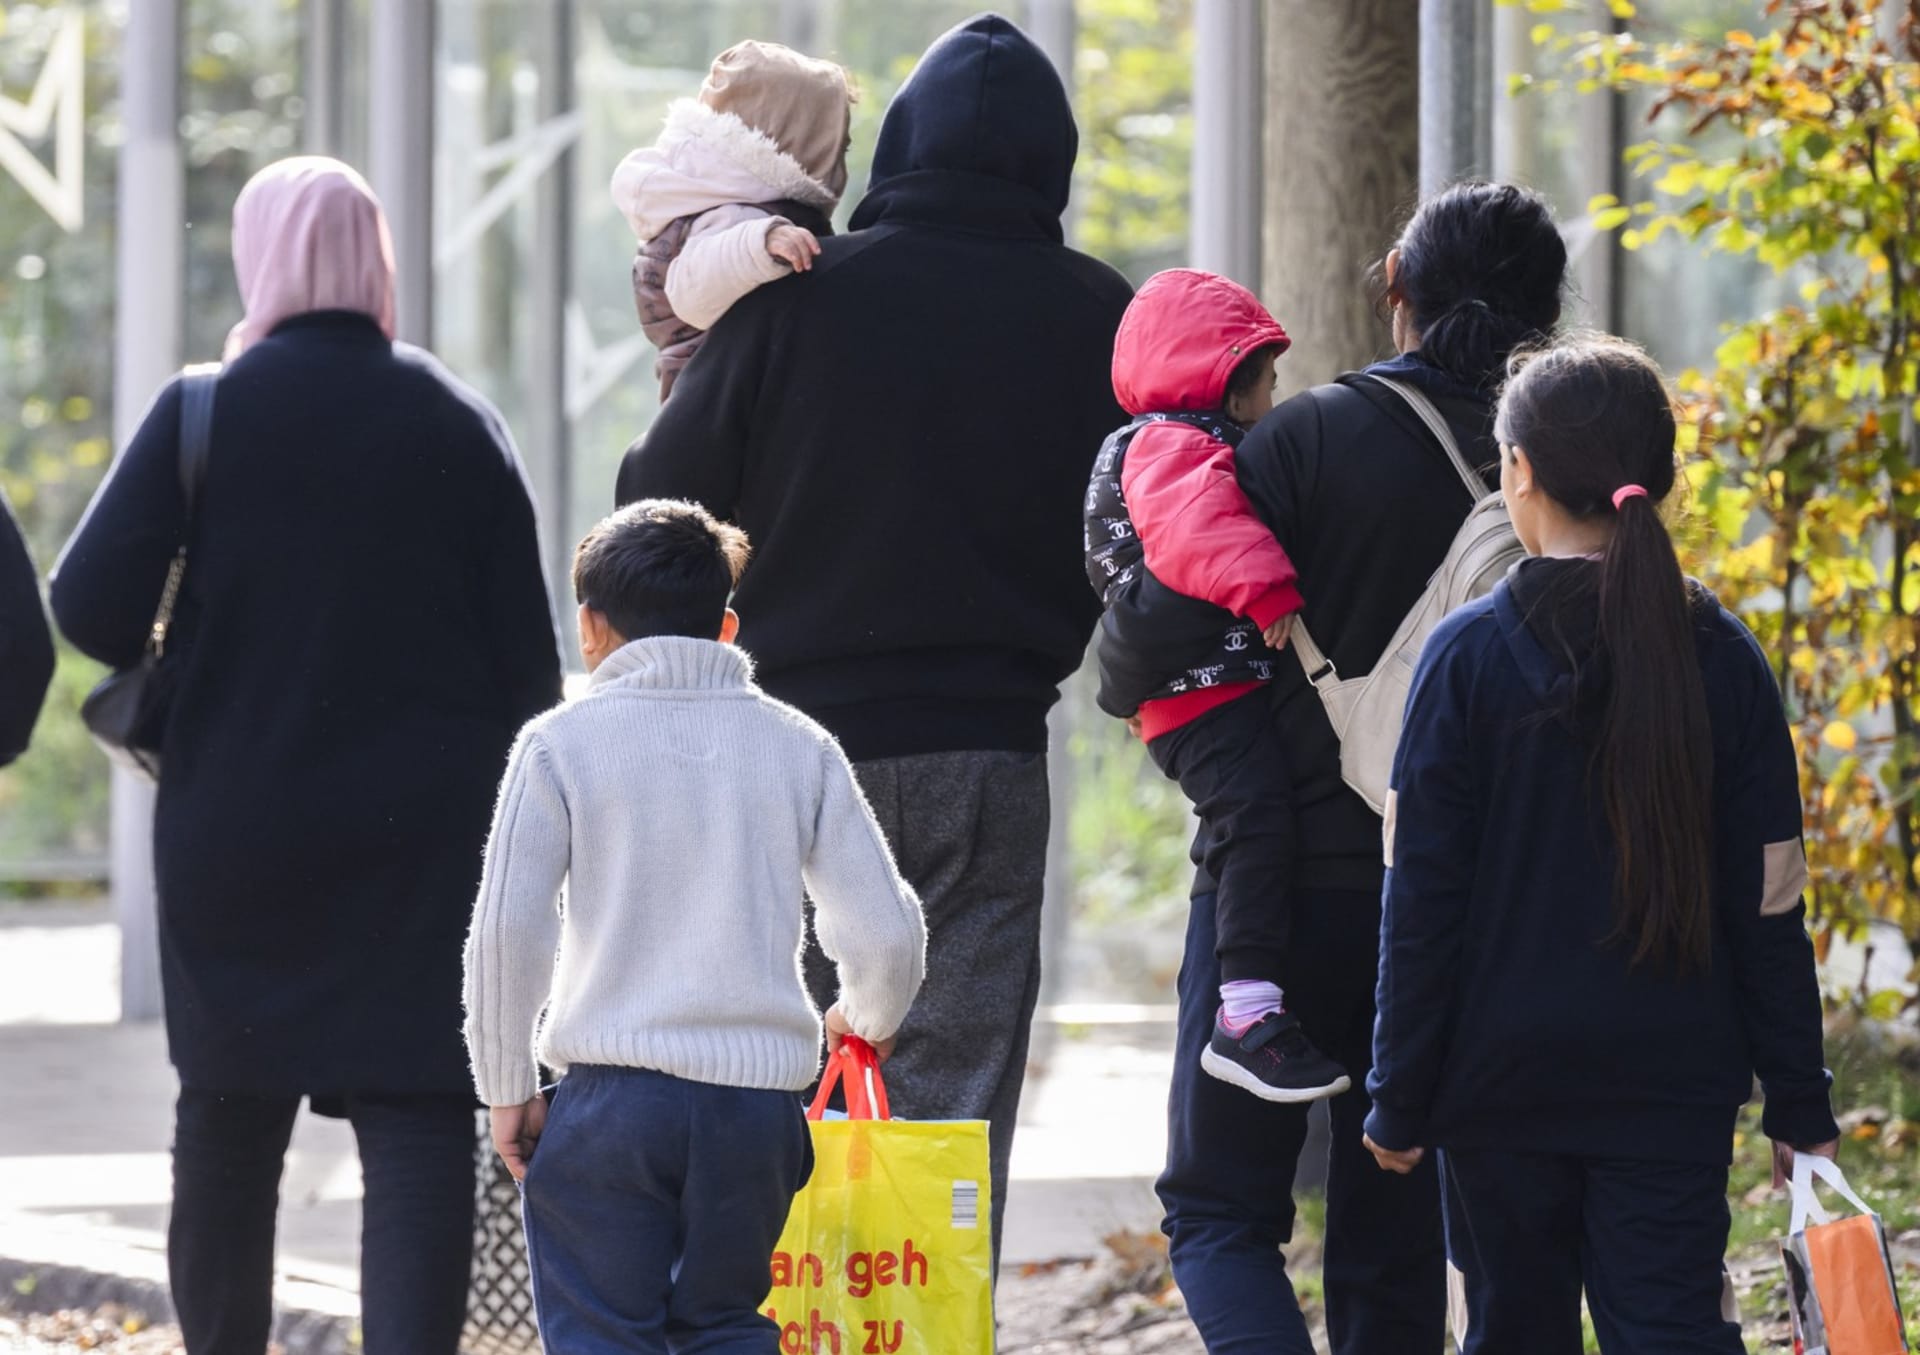 Migranti v azylovém centru v Německu